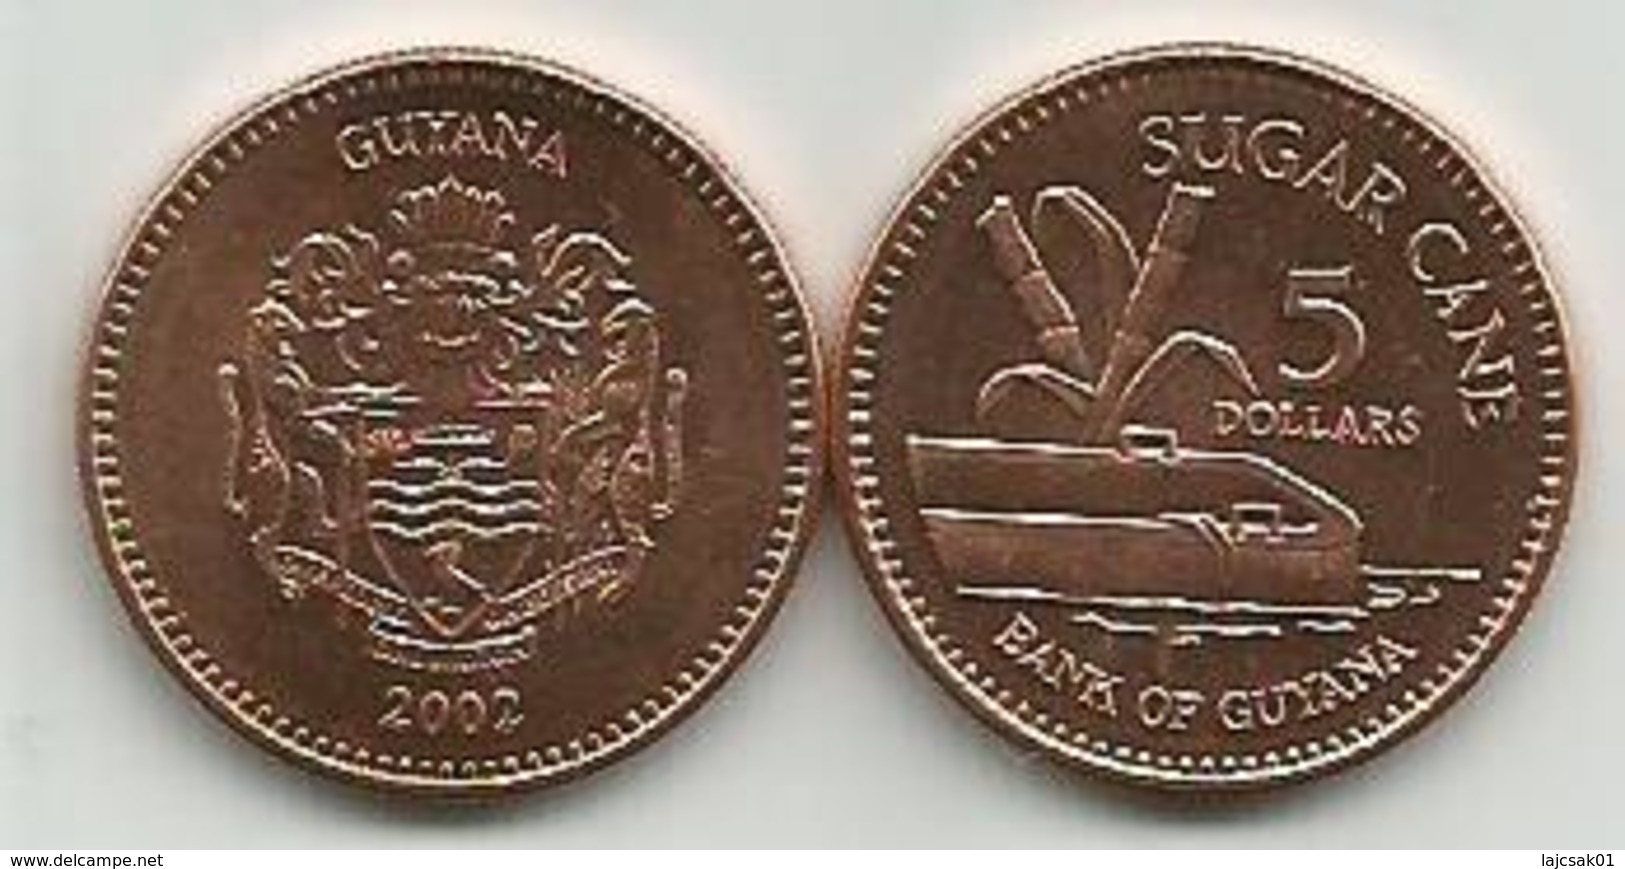 Guyana 5 Dollars 2002. High Grade - Guyana